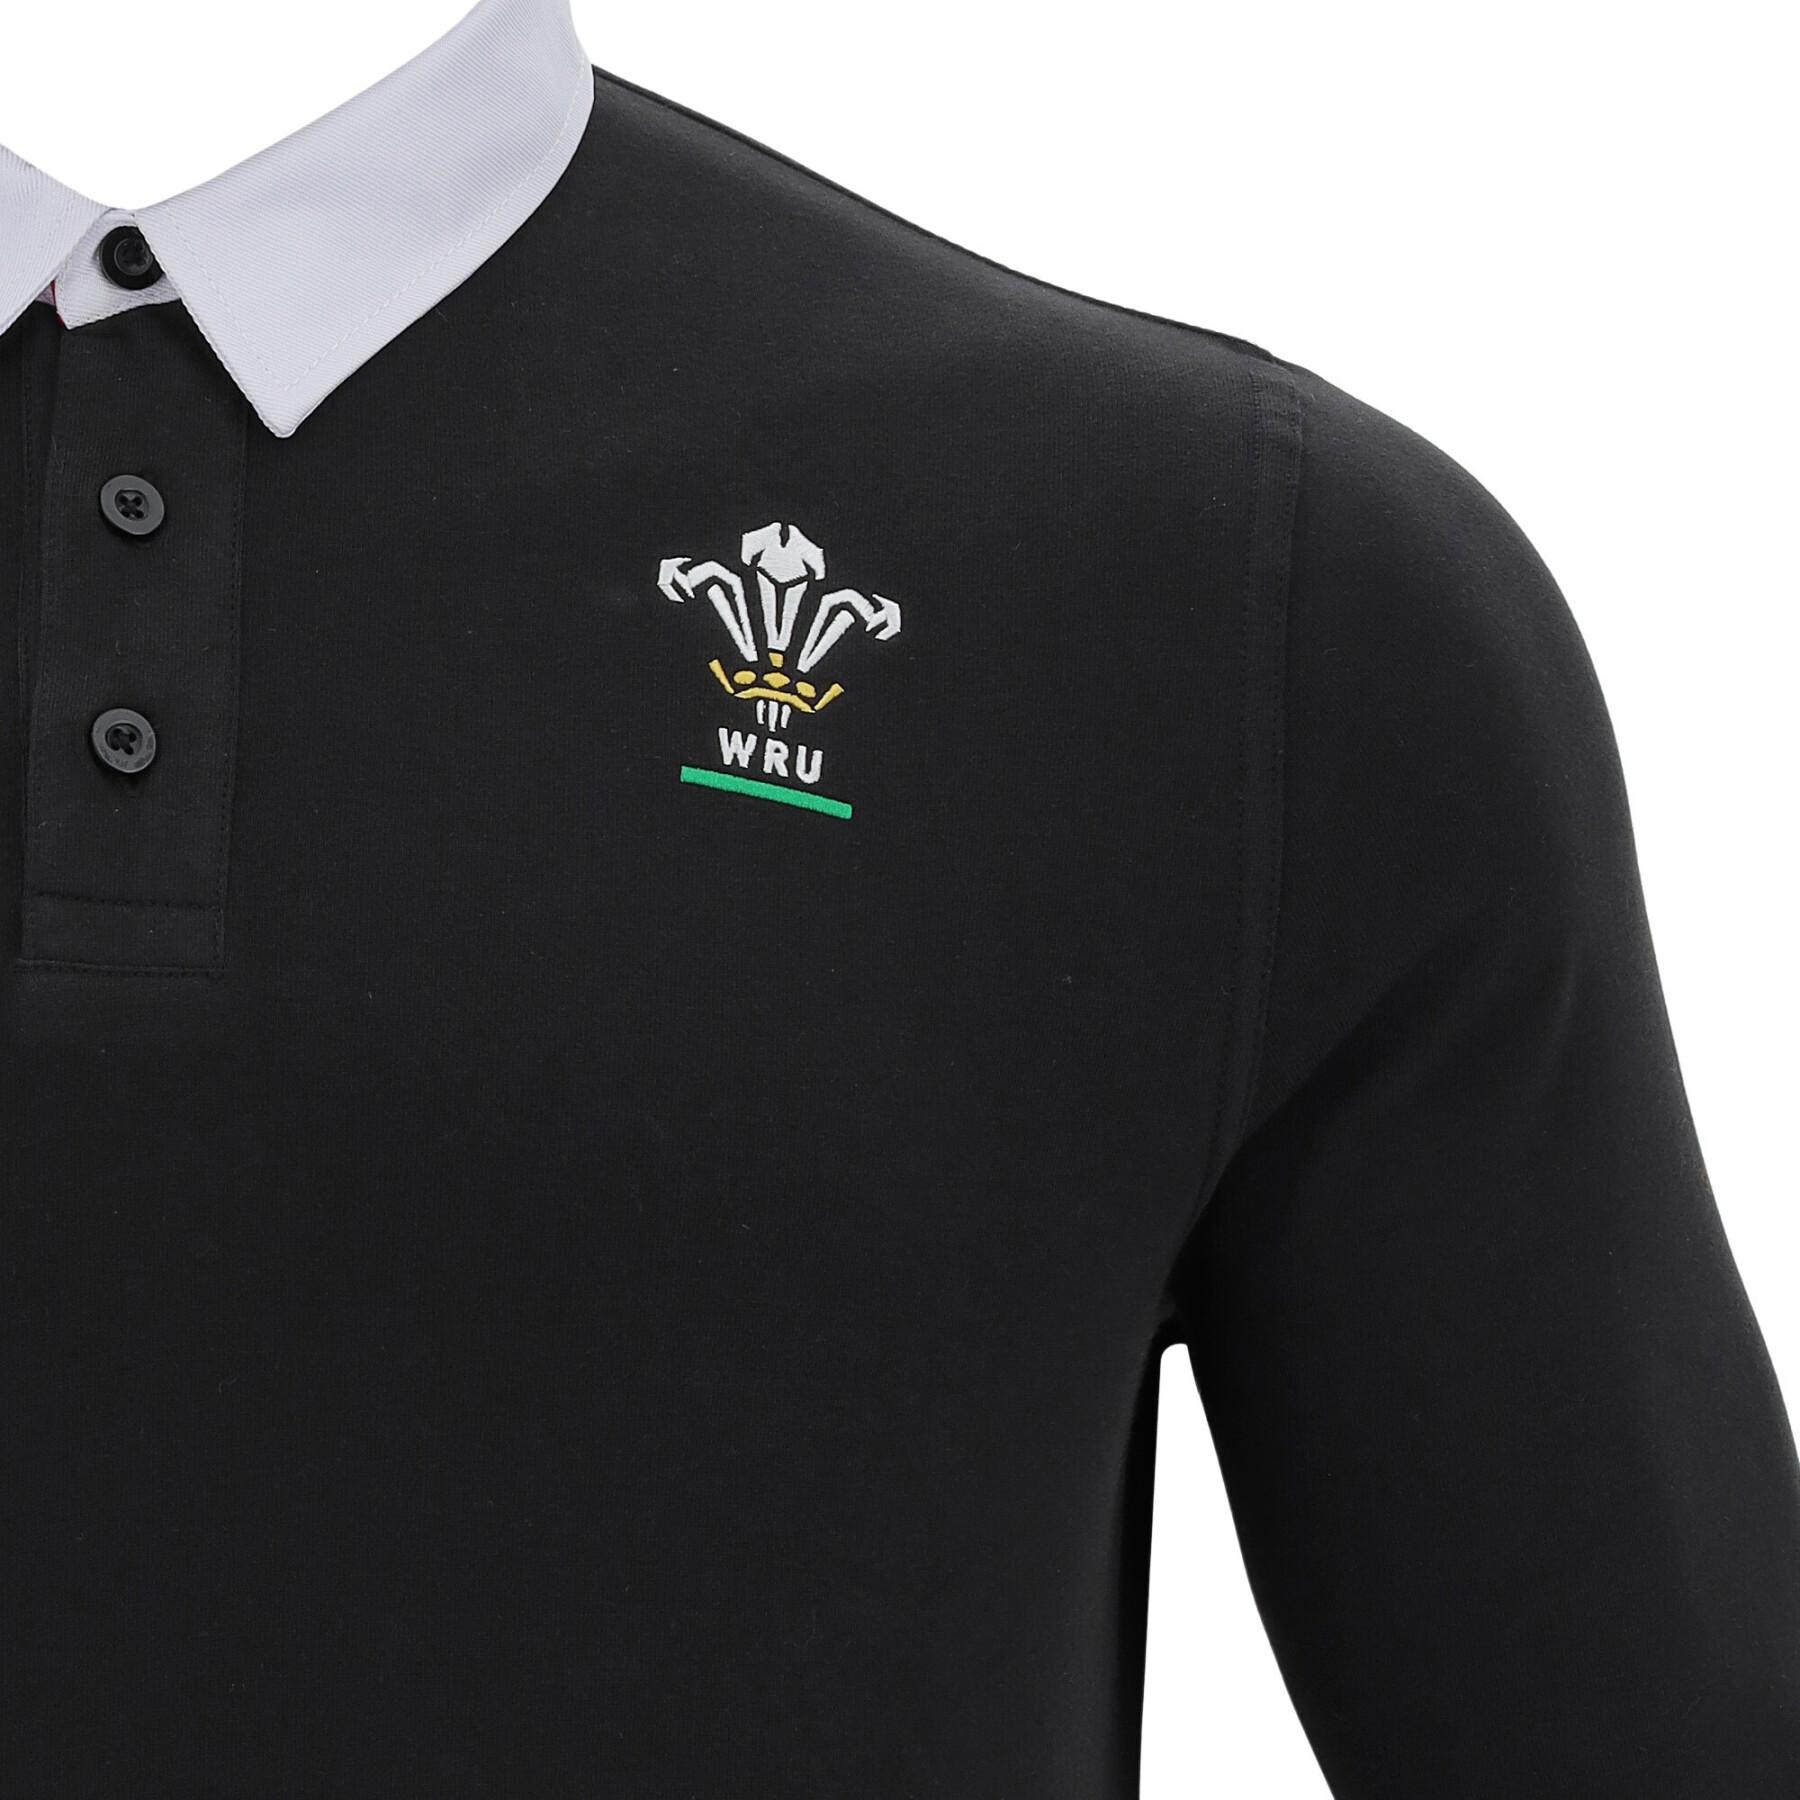 Camisa pólo de algodão Pays de galles rugby 2020/21